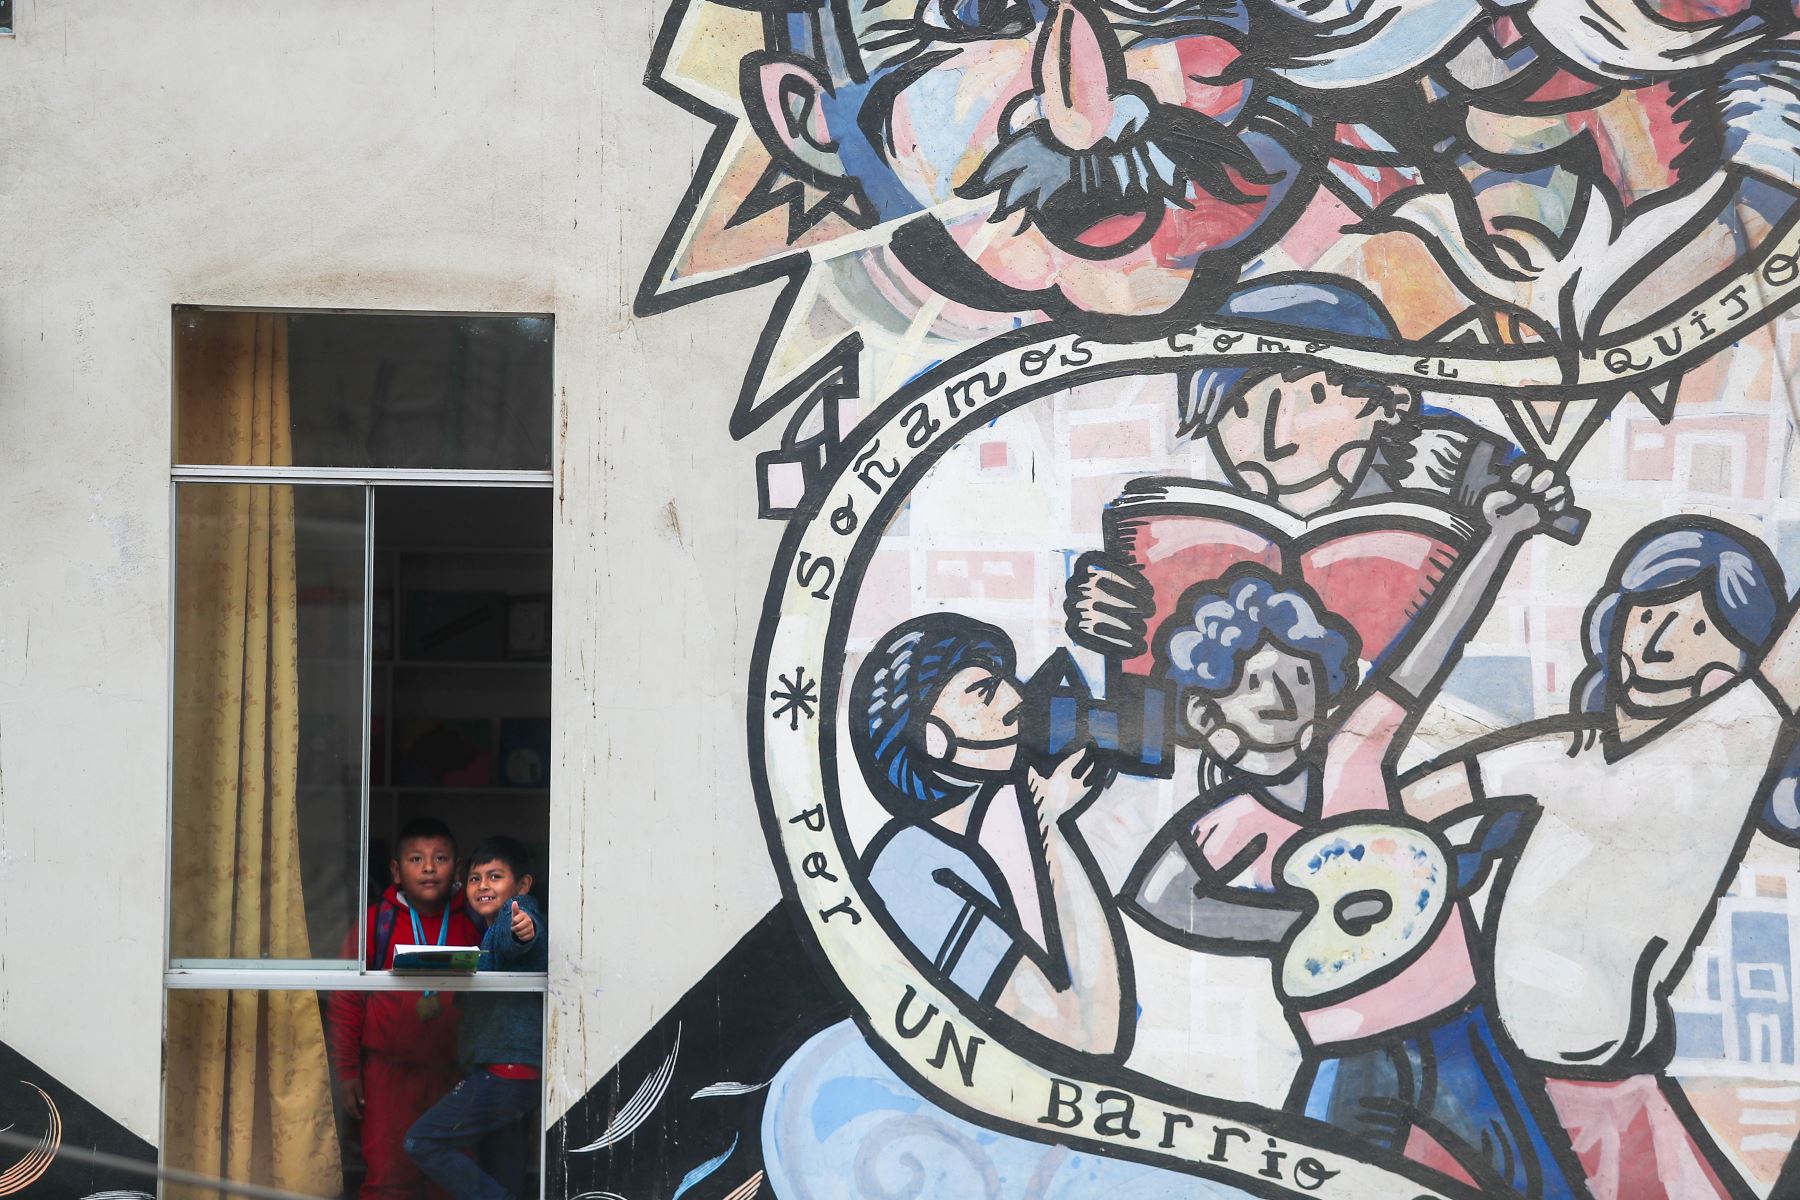 El ministerio de justicia Editora Perú y se unen en convenio para la difusión de la importancia de los derechos fundamentales de las personas, en talleres para niños del proyecto Quijote para la vida.
Foto: ANDINA/Ricardo Cuba